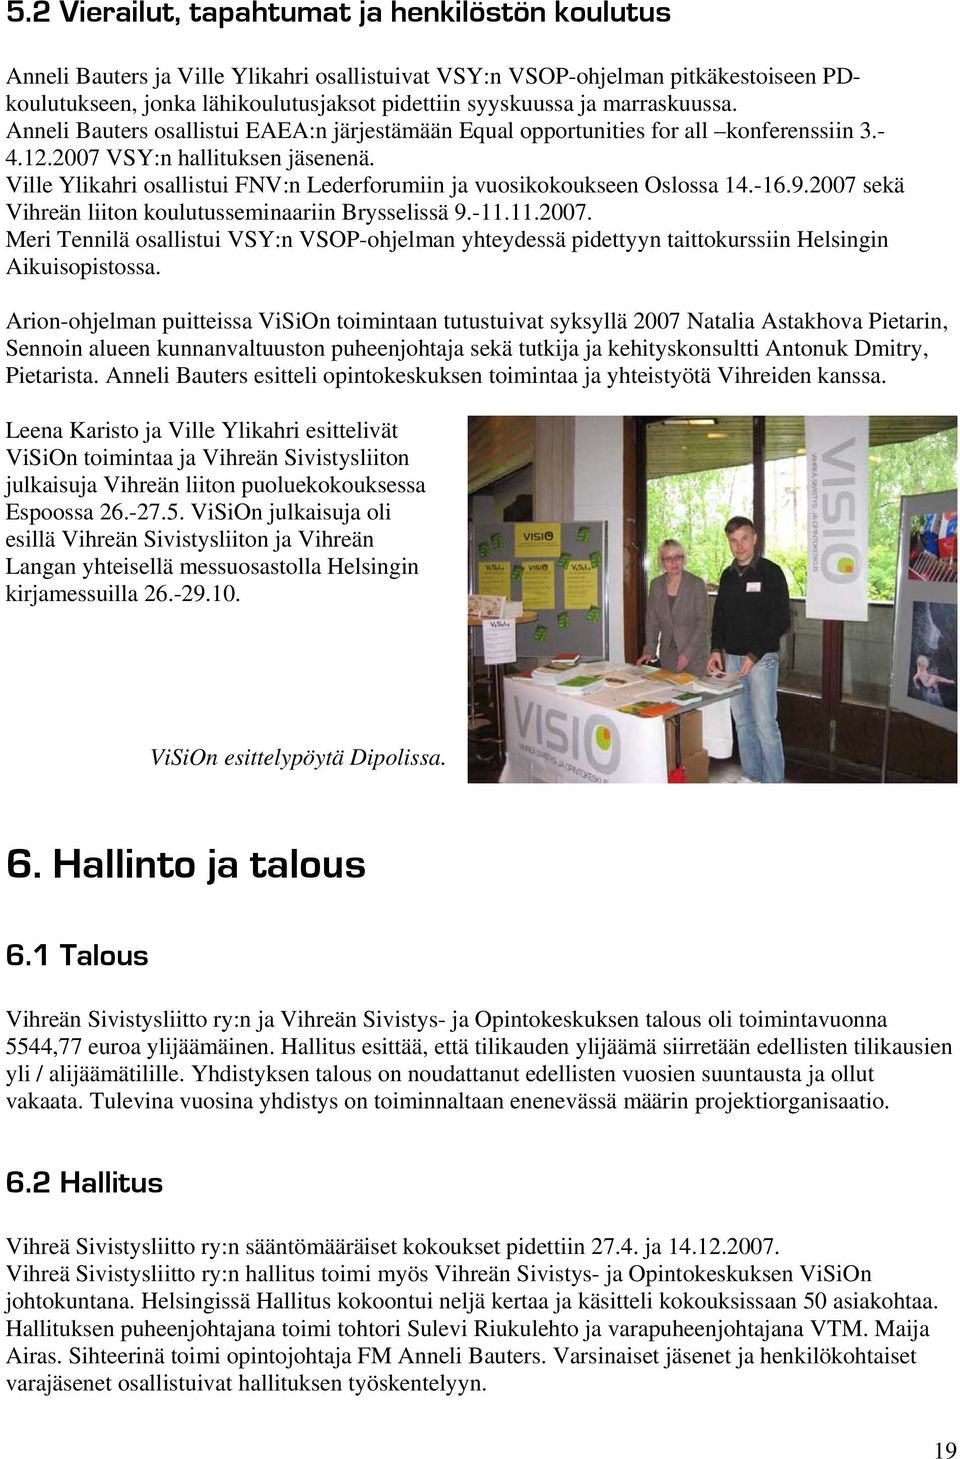 Ville Ylikahri osallistui FNV:n Lederforumiin ja vuosikokoukseen Oslossa 14.-16.9.2007 sekä Vihreän liiton koulutusseminaariin Brysselissä 9.-11.11.2007. Meri Tennilä osallistui VSY:n VSOP-ohjelman yhteydessä pidettyyn taittokurssiin Helsingin Aikuisopistossa.